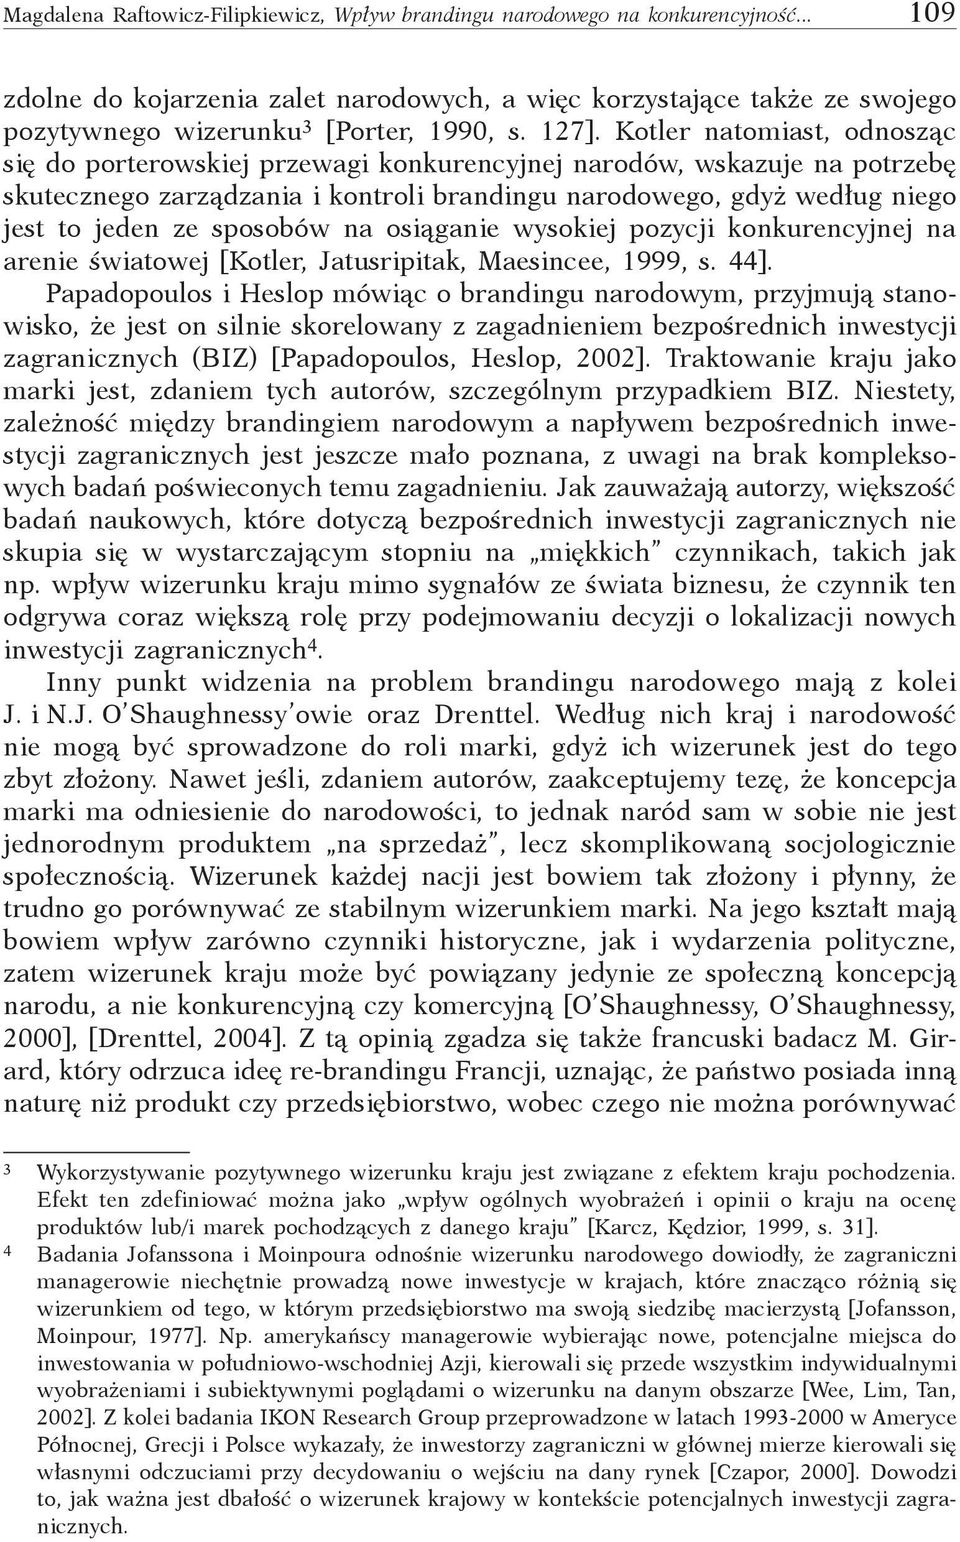 sposobów na osiąganie wysokiej pozycji konkurencyjnej na arenie światowej [Kotler, Jatusripitak, Maesincee, 1999, s. 44].